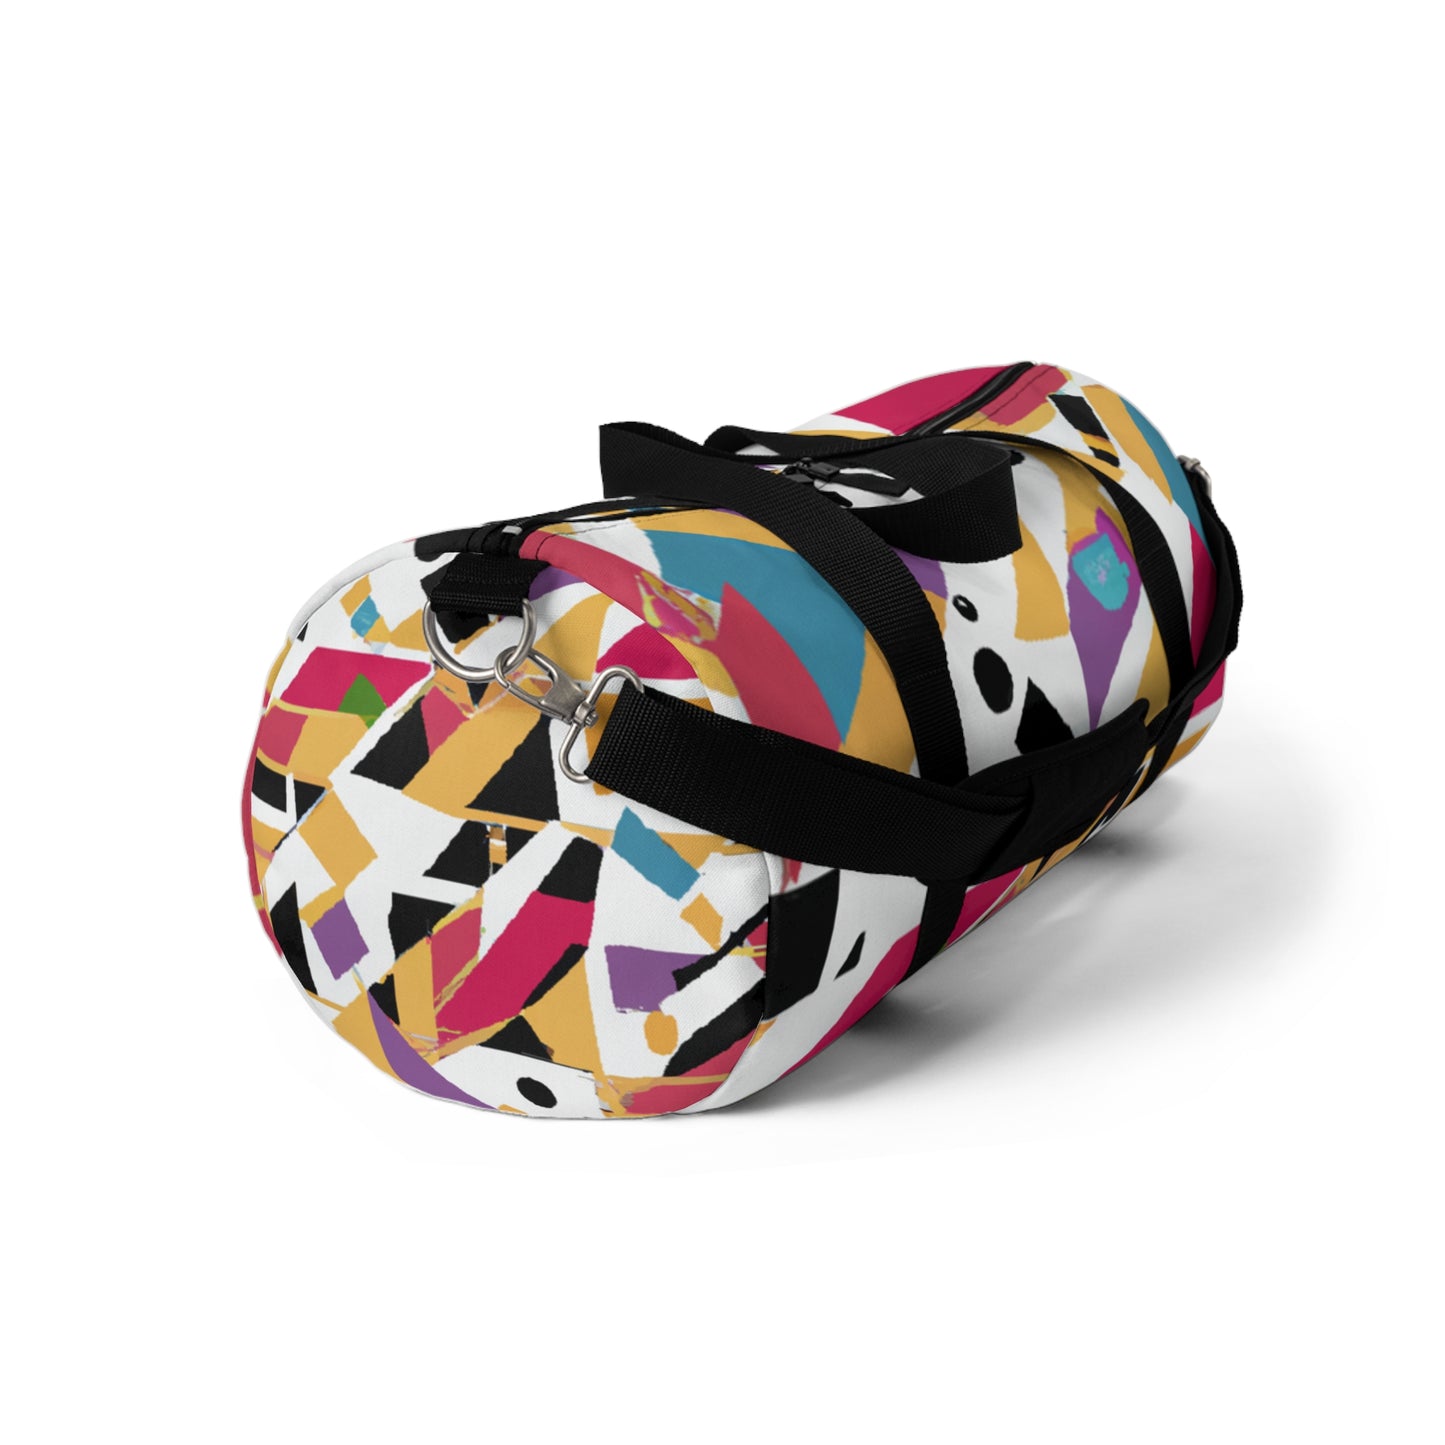 Ida Euclid - Geometric Pattern Duffel Travel Gym Luggage Bag